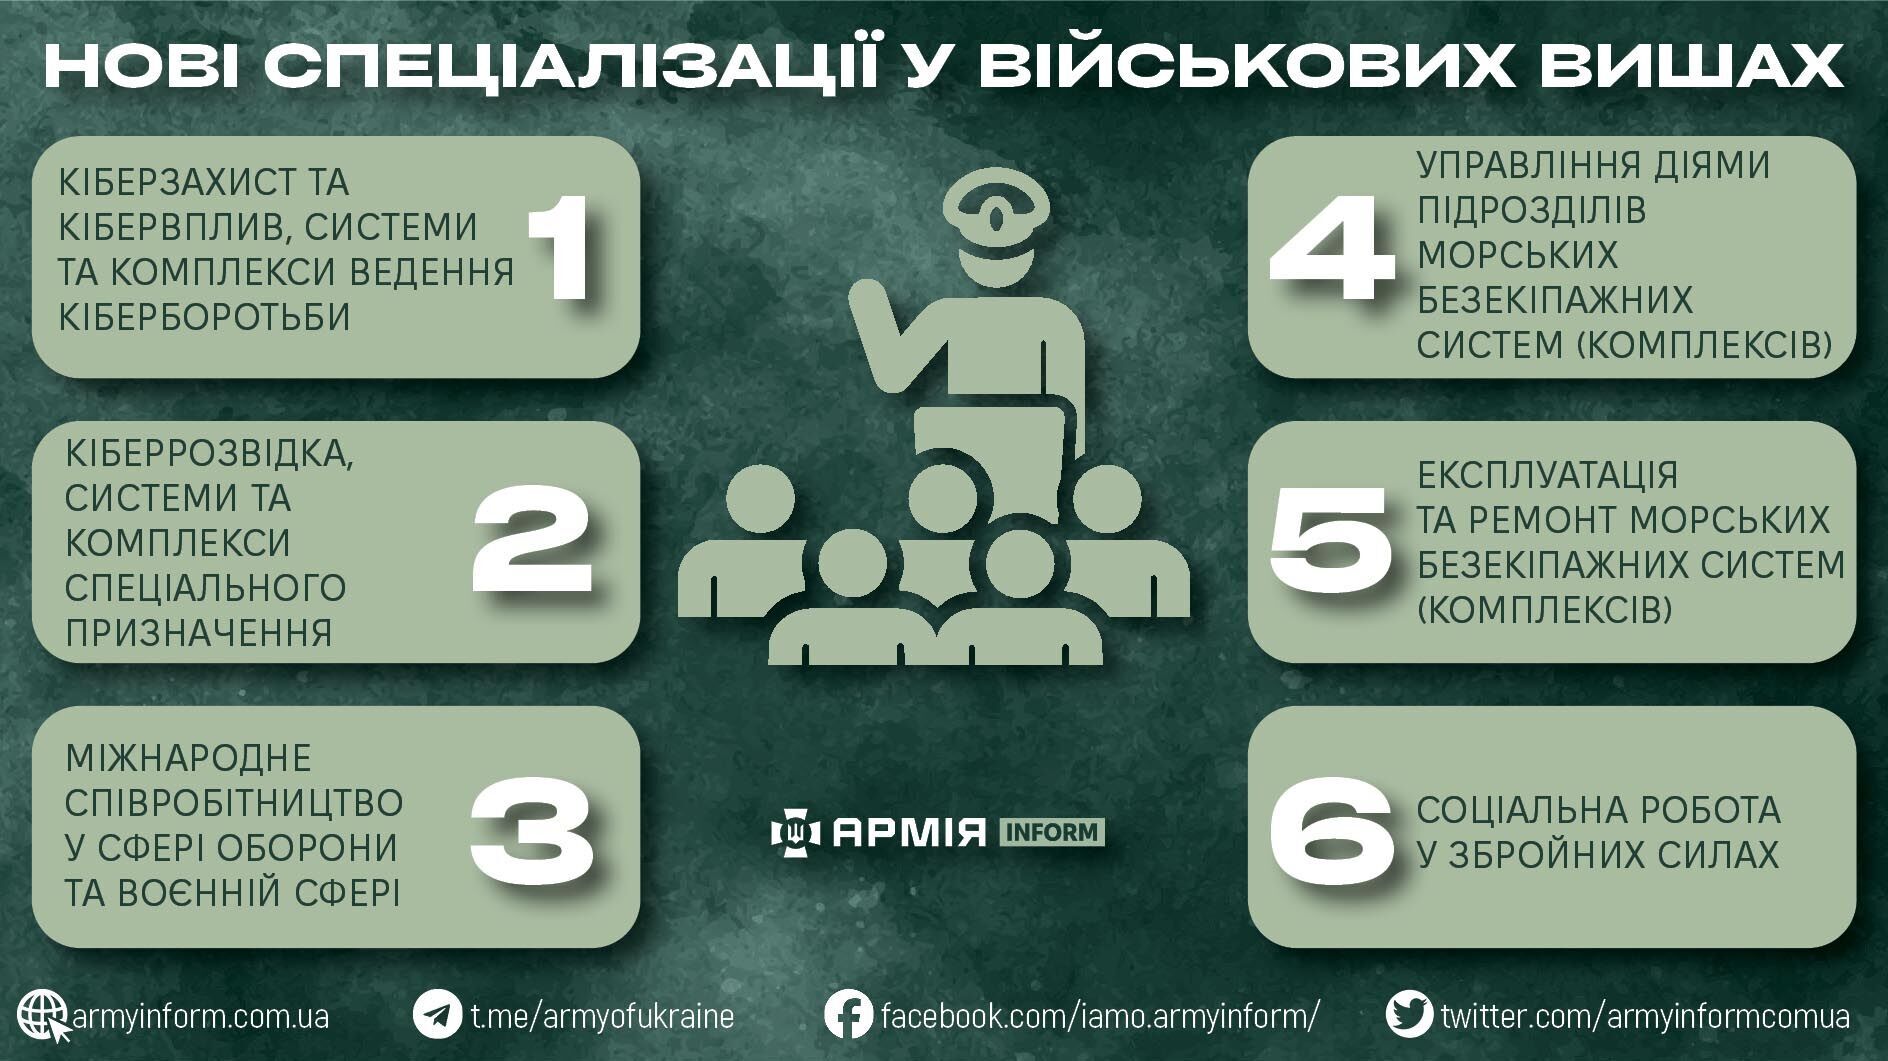 В военных вузах Украины с 1 сентября появятся новые специальности. Список